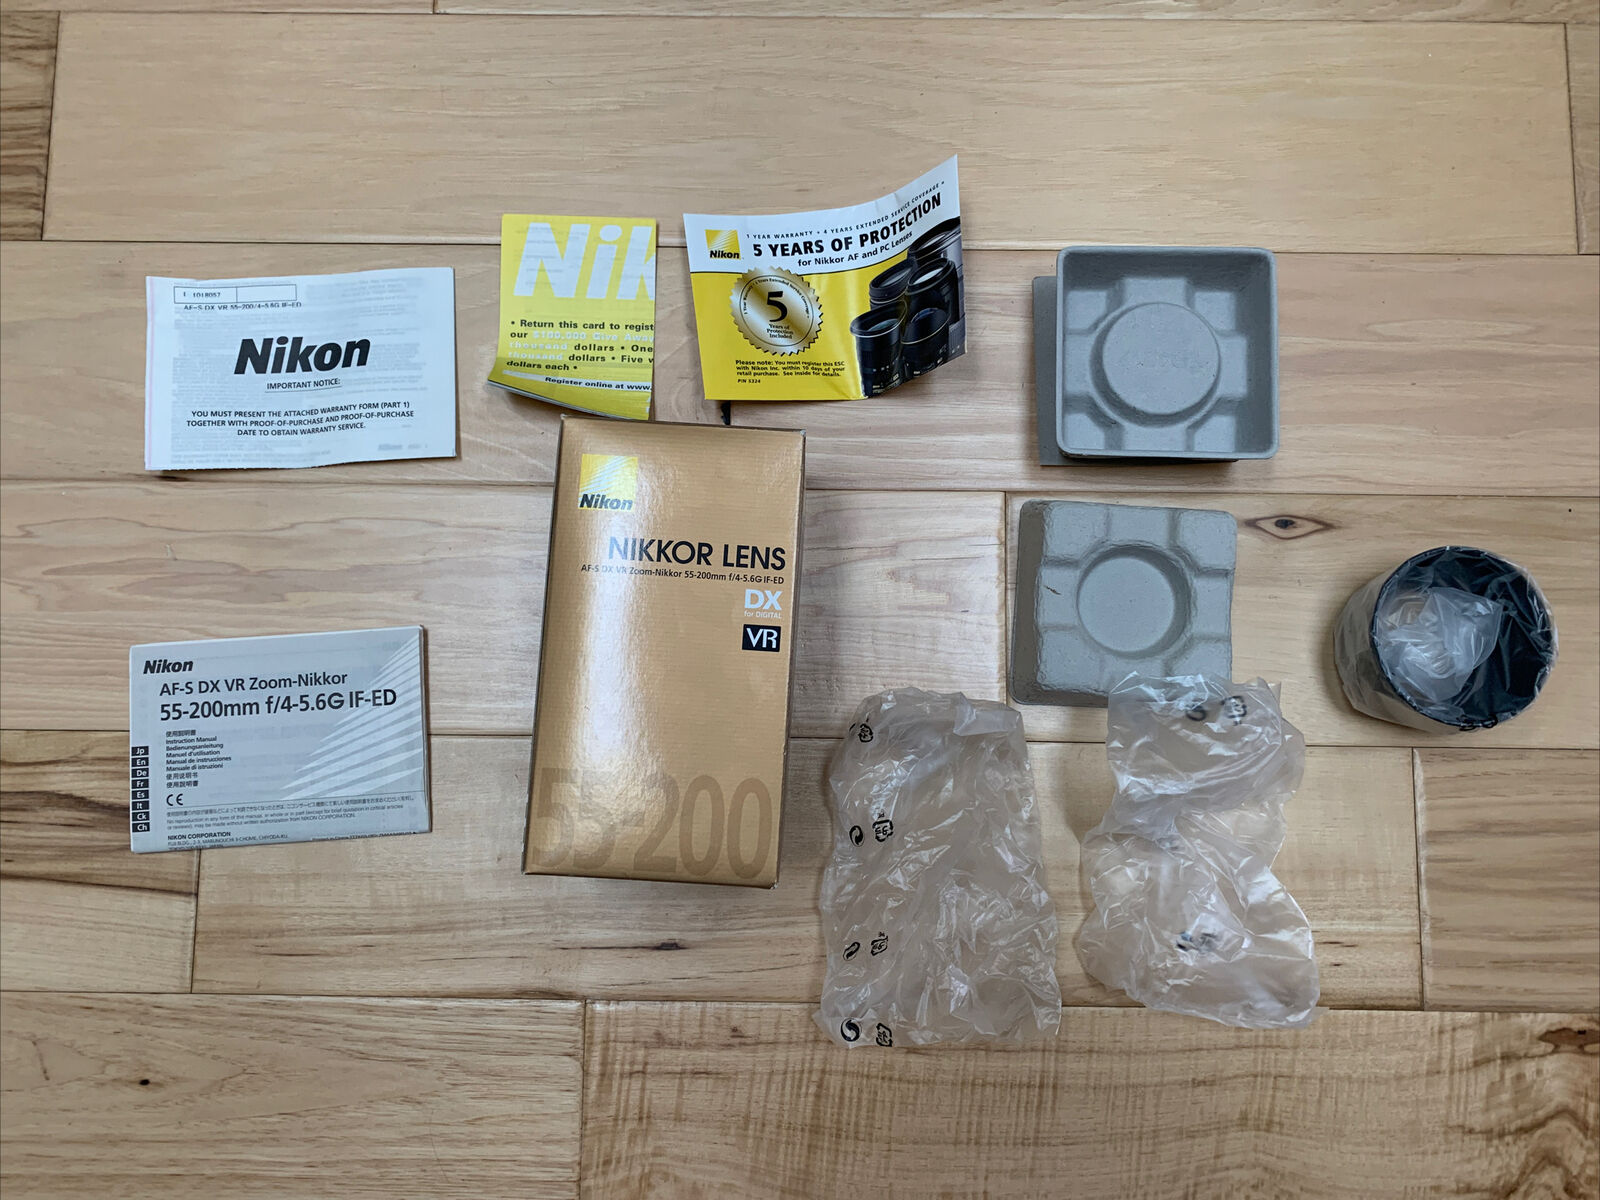 Nikon Nikkor Lens Af-s Dx Nikkor 55-200mm F/4.5-5.6g Ed | Box, Paperwork, Shade